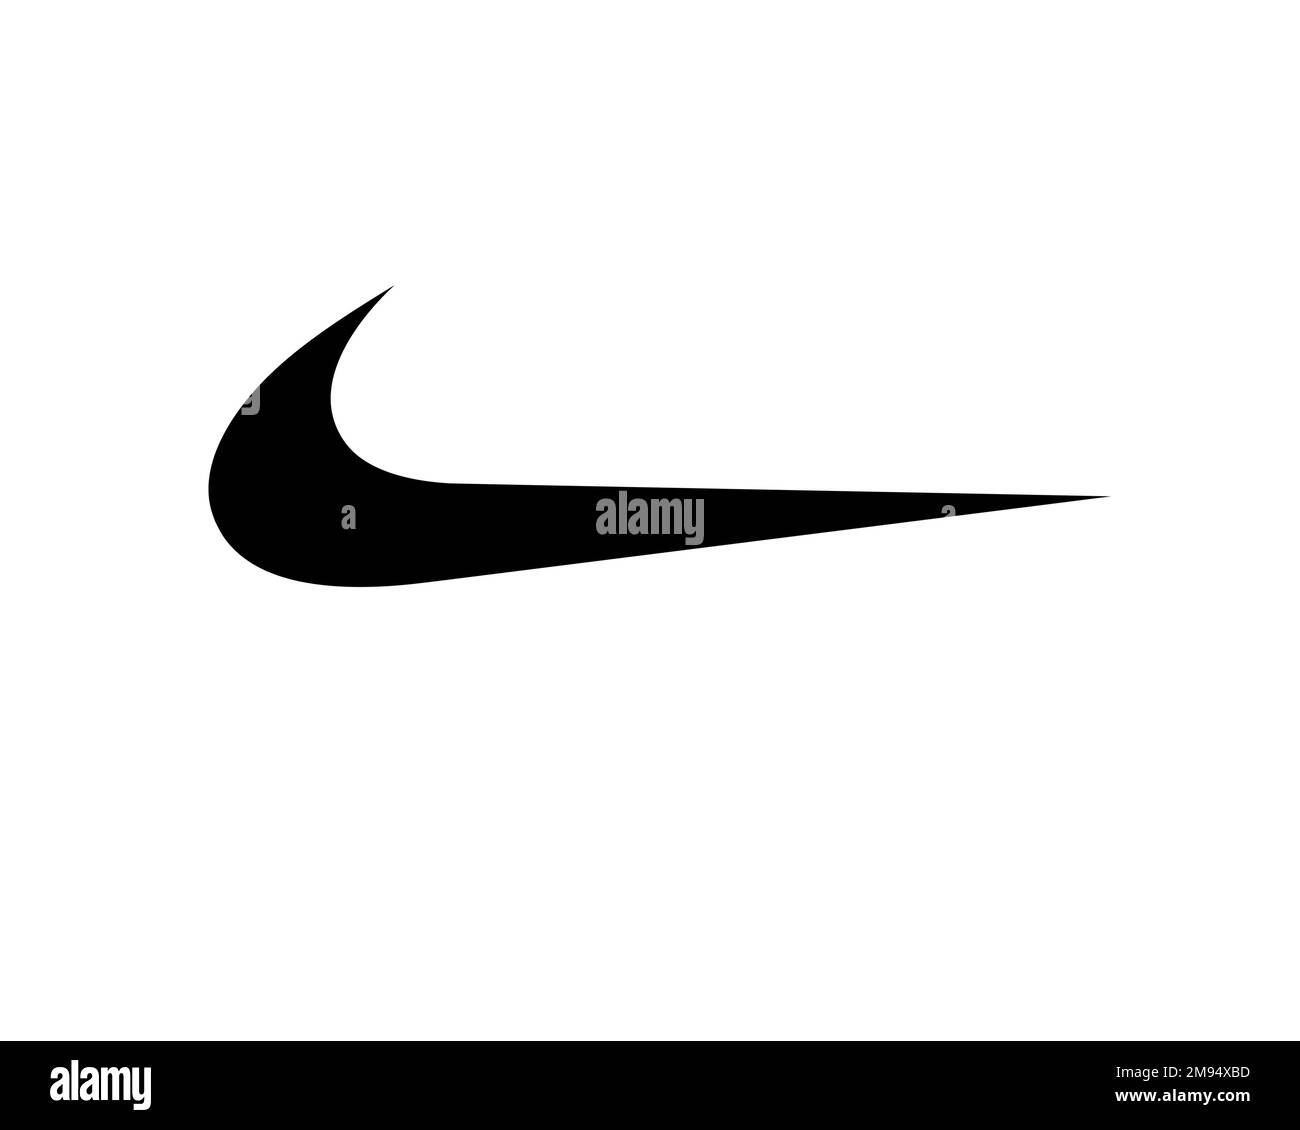 Nike symbol Banque d'images détourées - Alamy